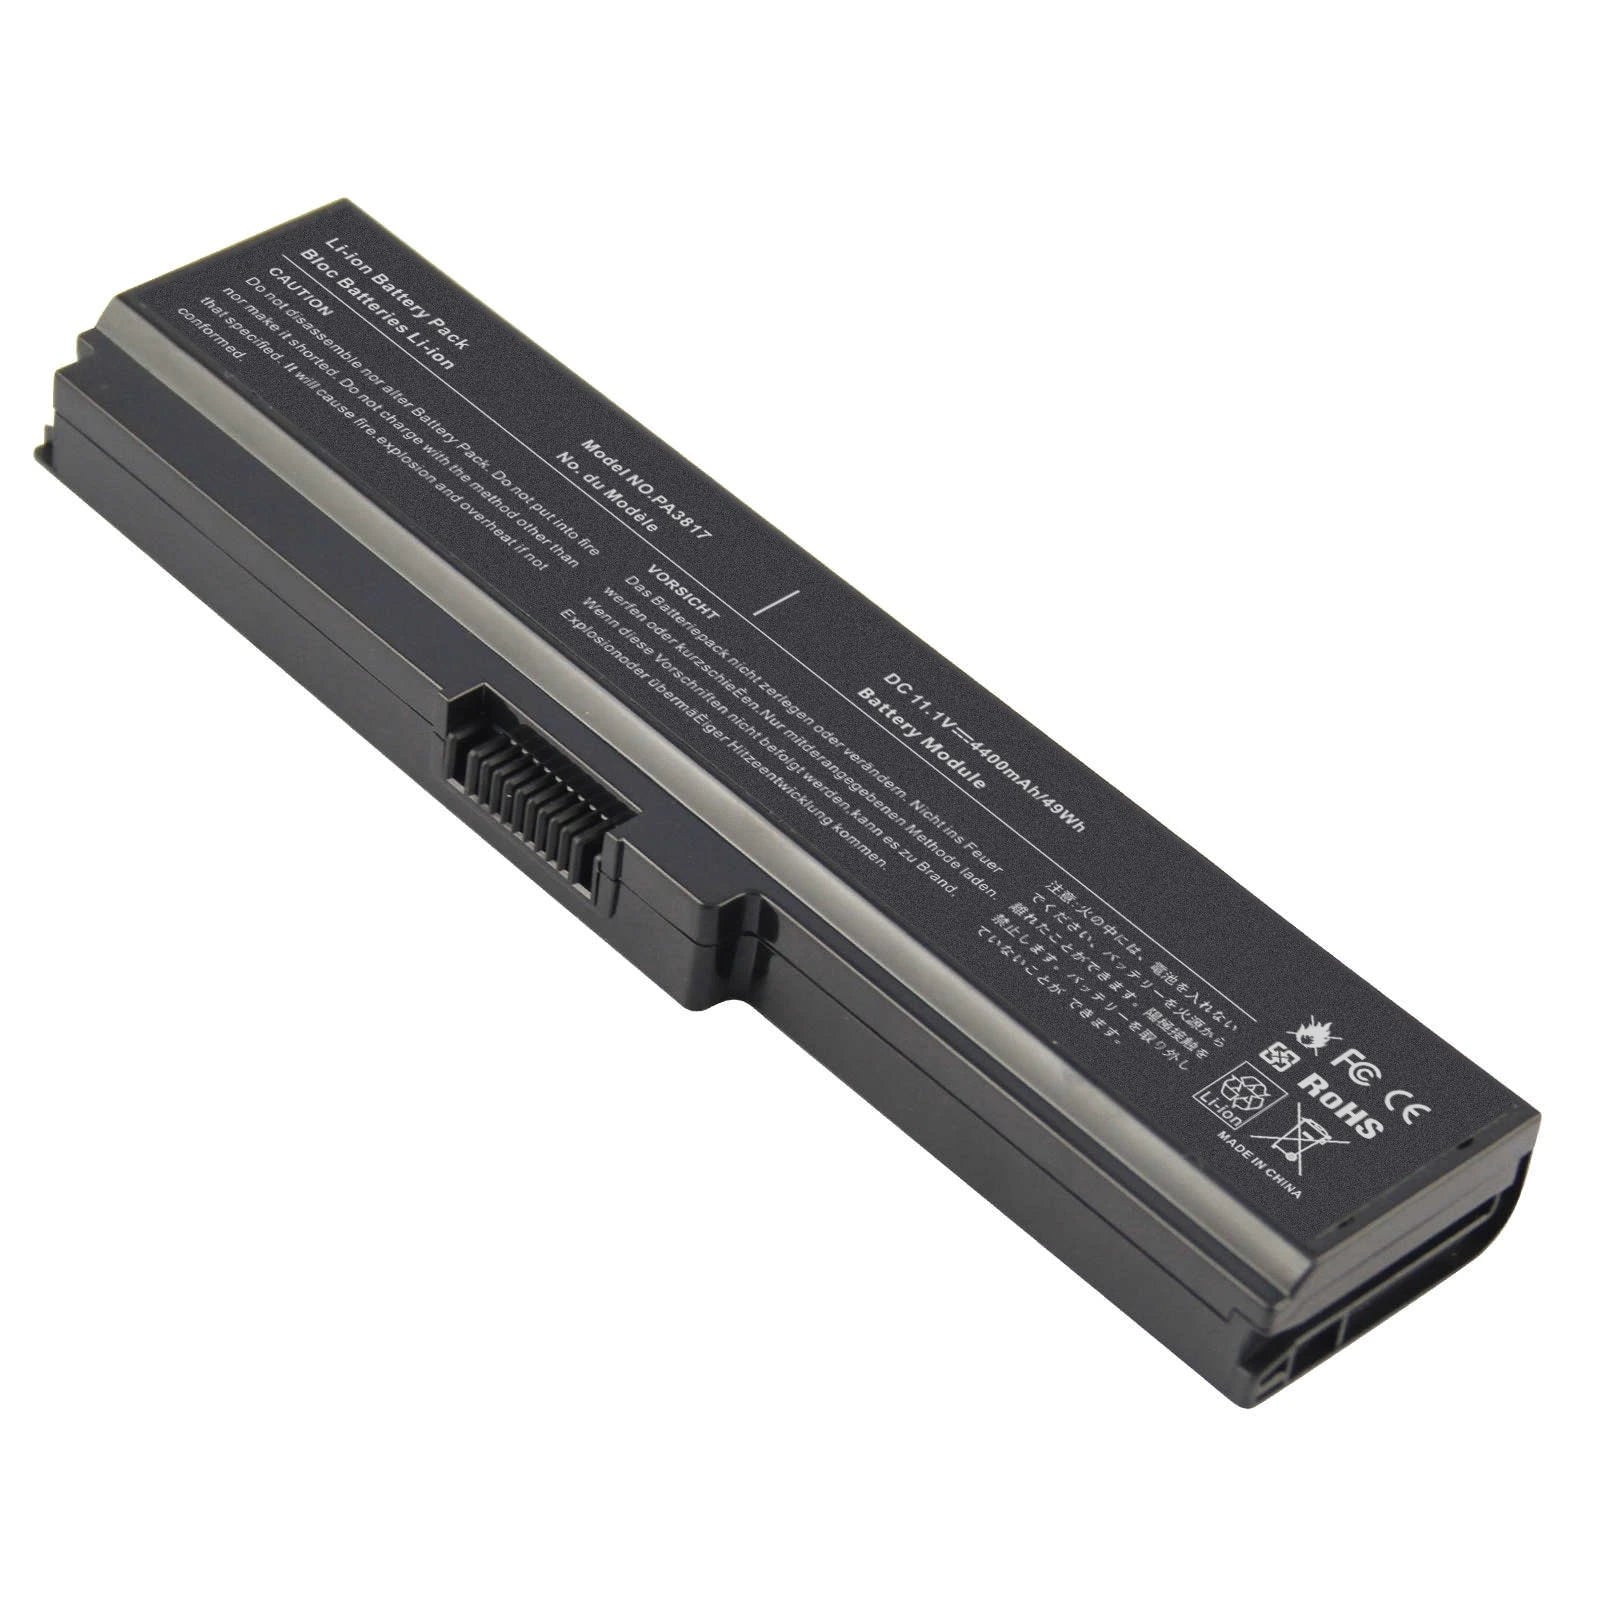 Battery for Toshiba L675 L750 L700 L755 P755 P750 C655 A655 A665 C655D L755D L755-s5167 L755-s5170 L755-s5175 L755-s5213 Satellite,